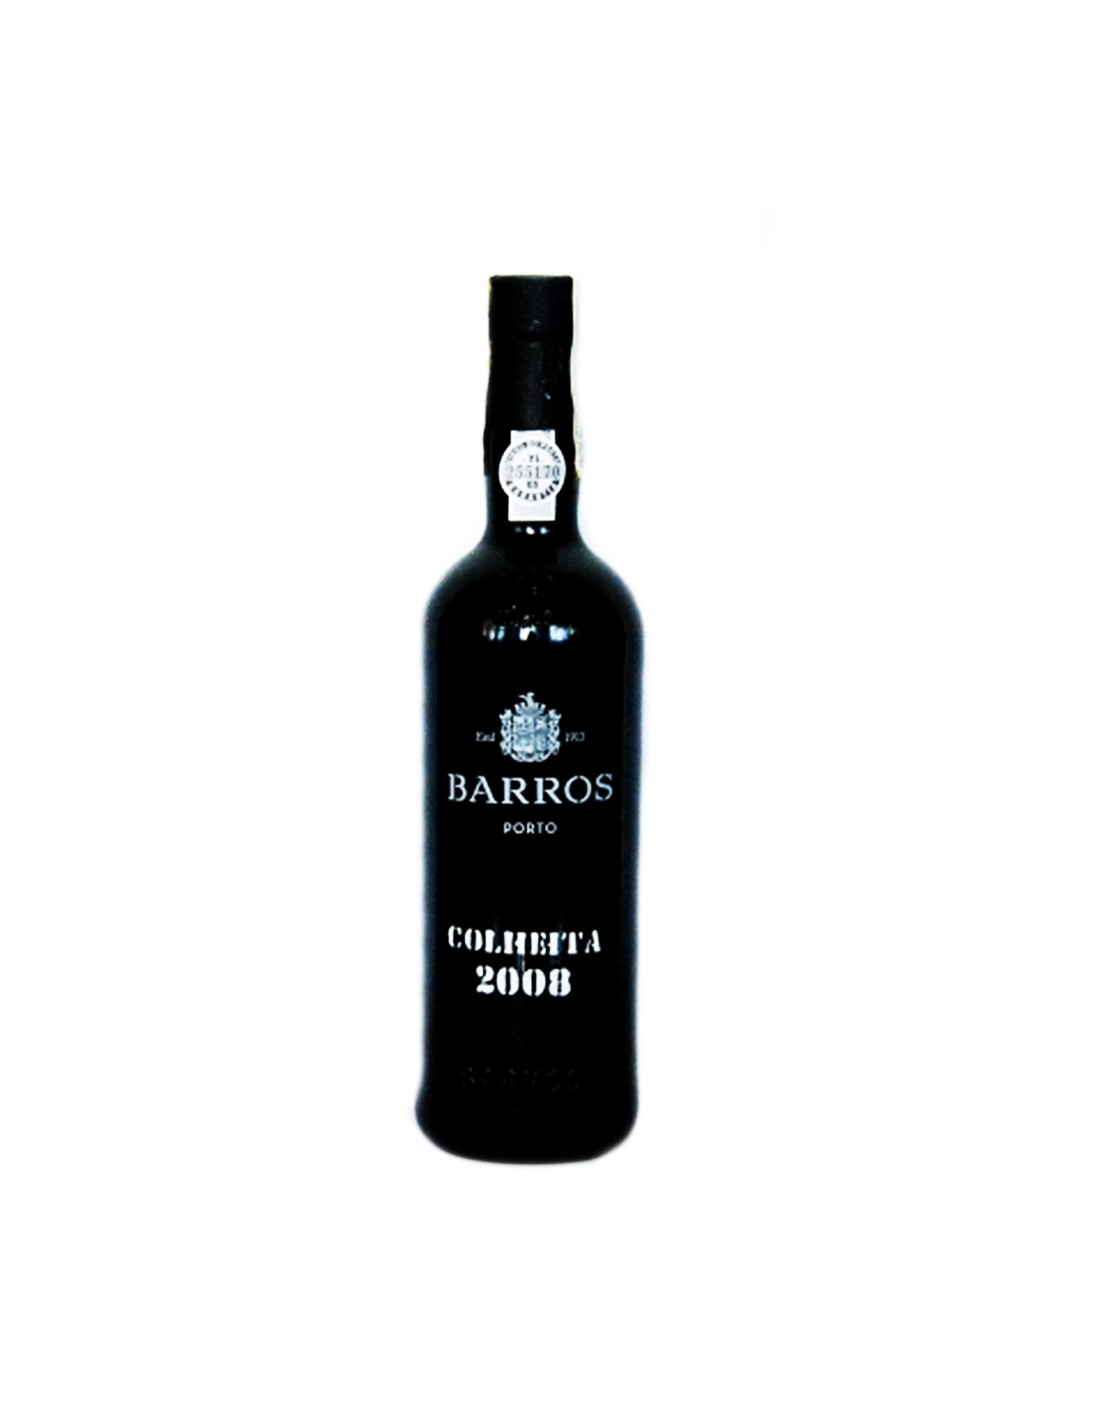 Vin porto roze dulce, Barros Colheita 2008, 20% alc., 0.75L, Portugalia alcooldiscount.ro